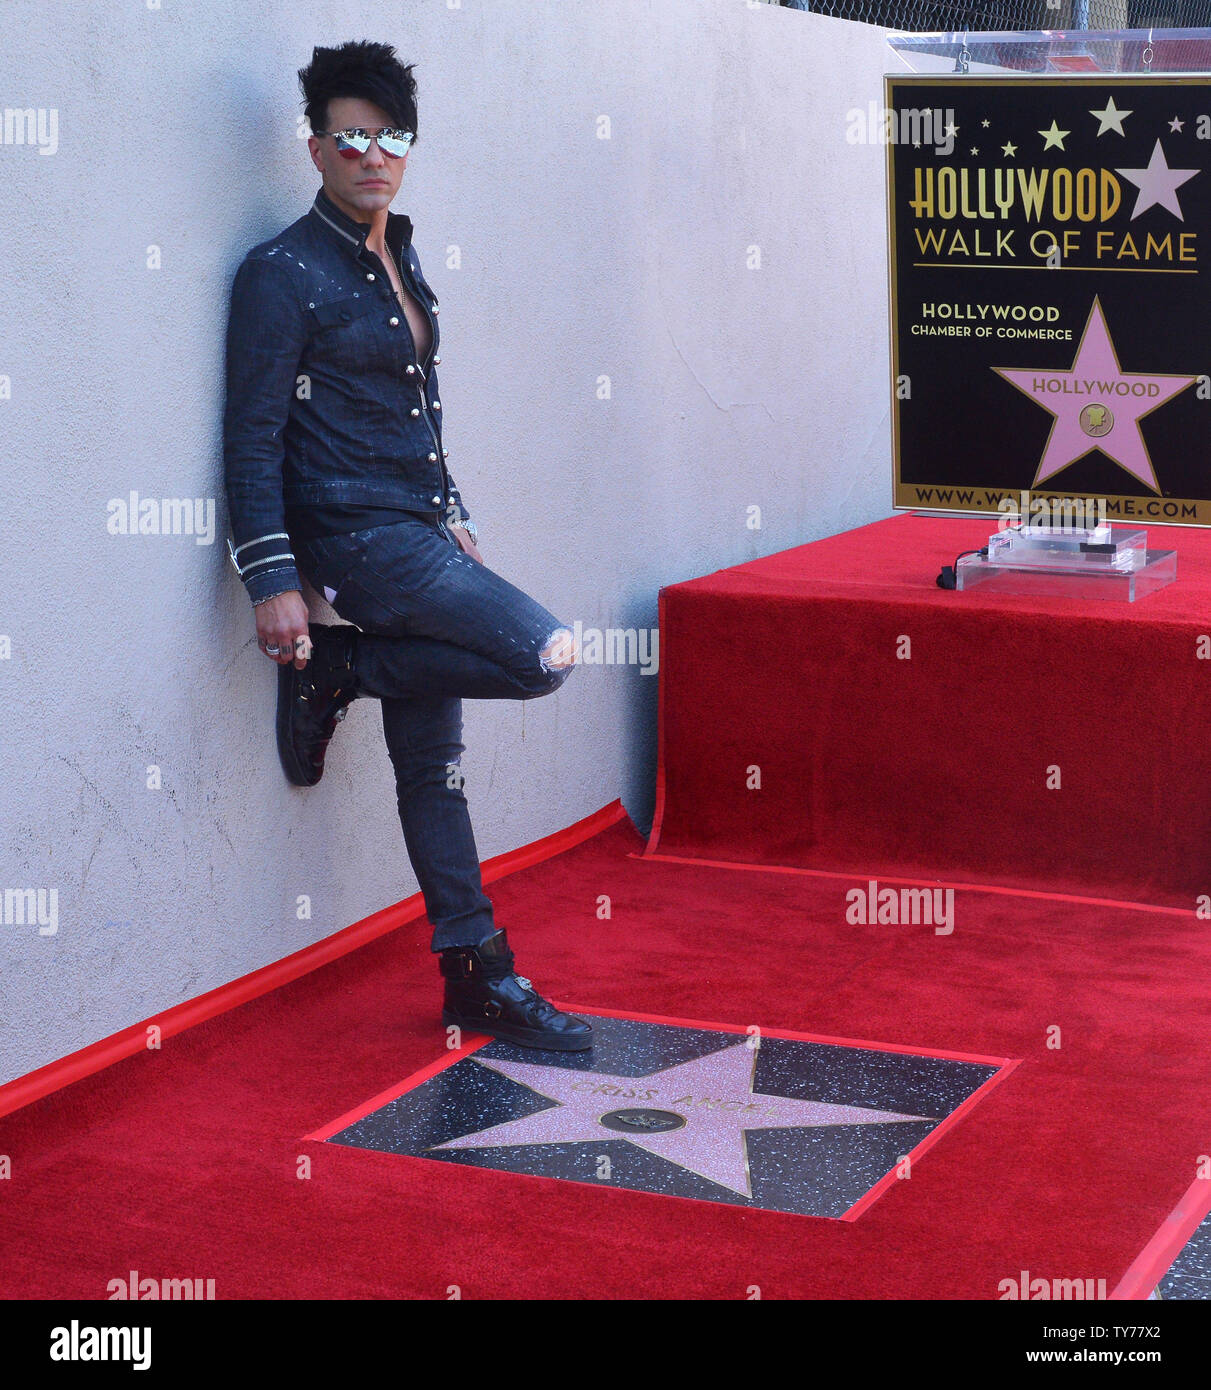 Musicista americano e l'illusionista Criss Angel colpisce una posa vicino alla sua stella durante una cerimonia di inaugurazione in onore di lui con la 2,615th della stella sulla Hollywood Walk of Fame a Los Angeles il 20 luglio 2017. Foto di Jim Ruymen/UPI Foto Stock